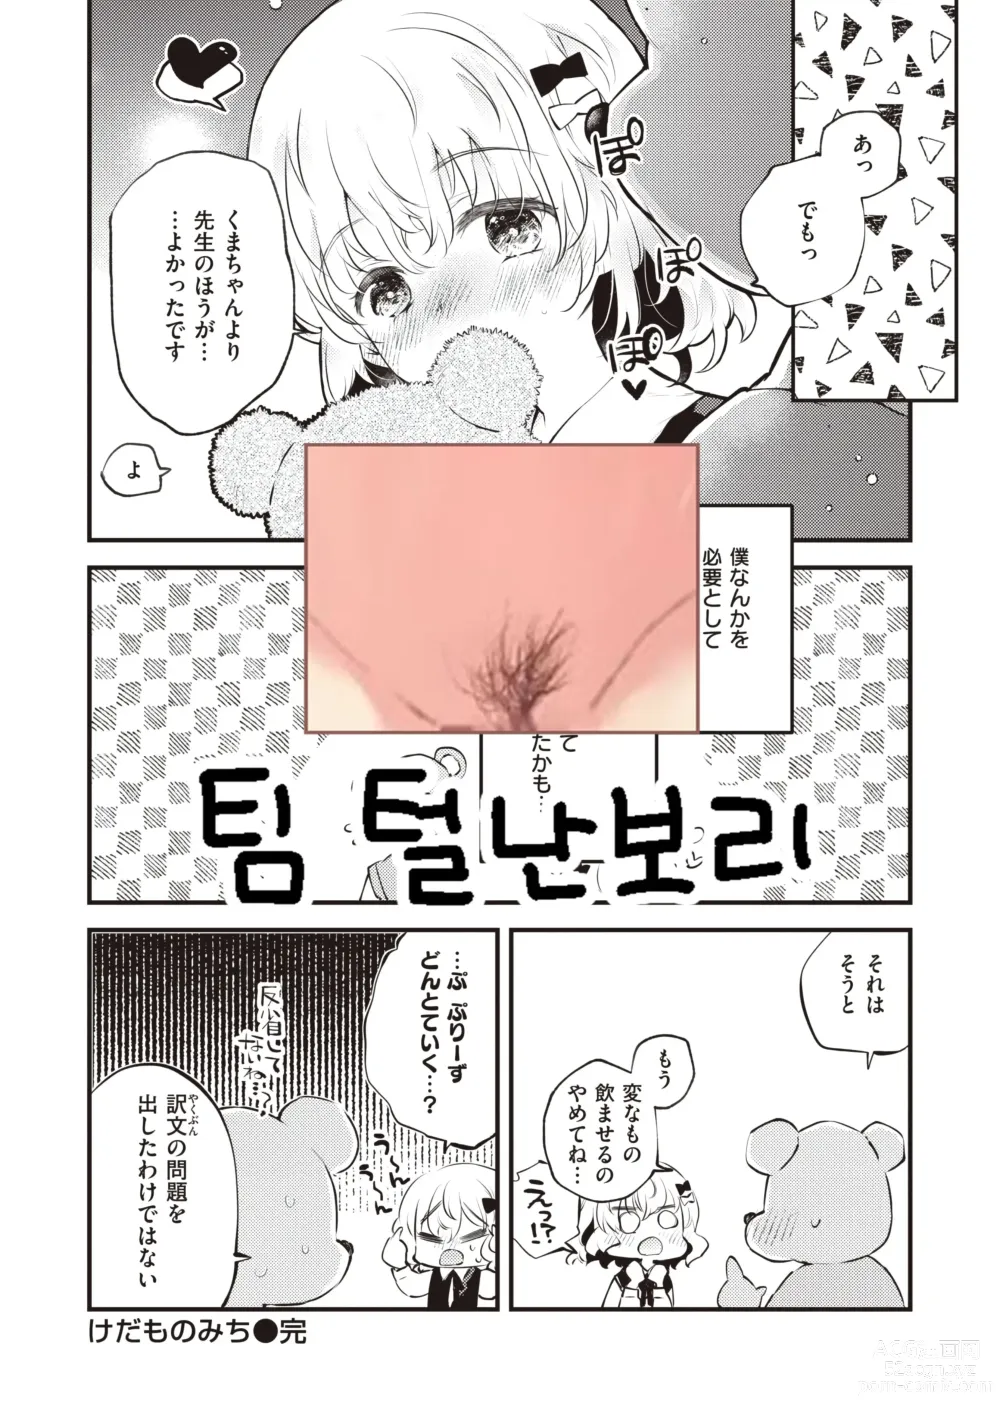 Page 27 of manga Kedamono Michi